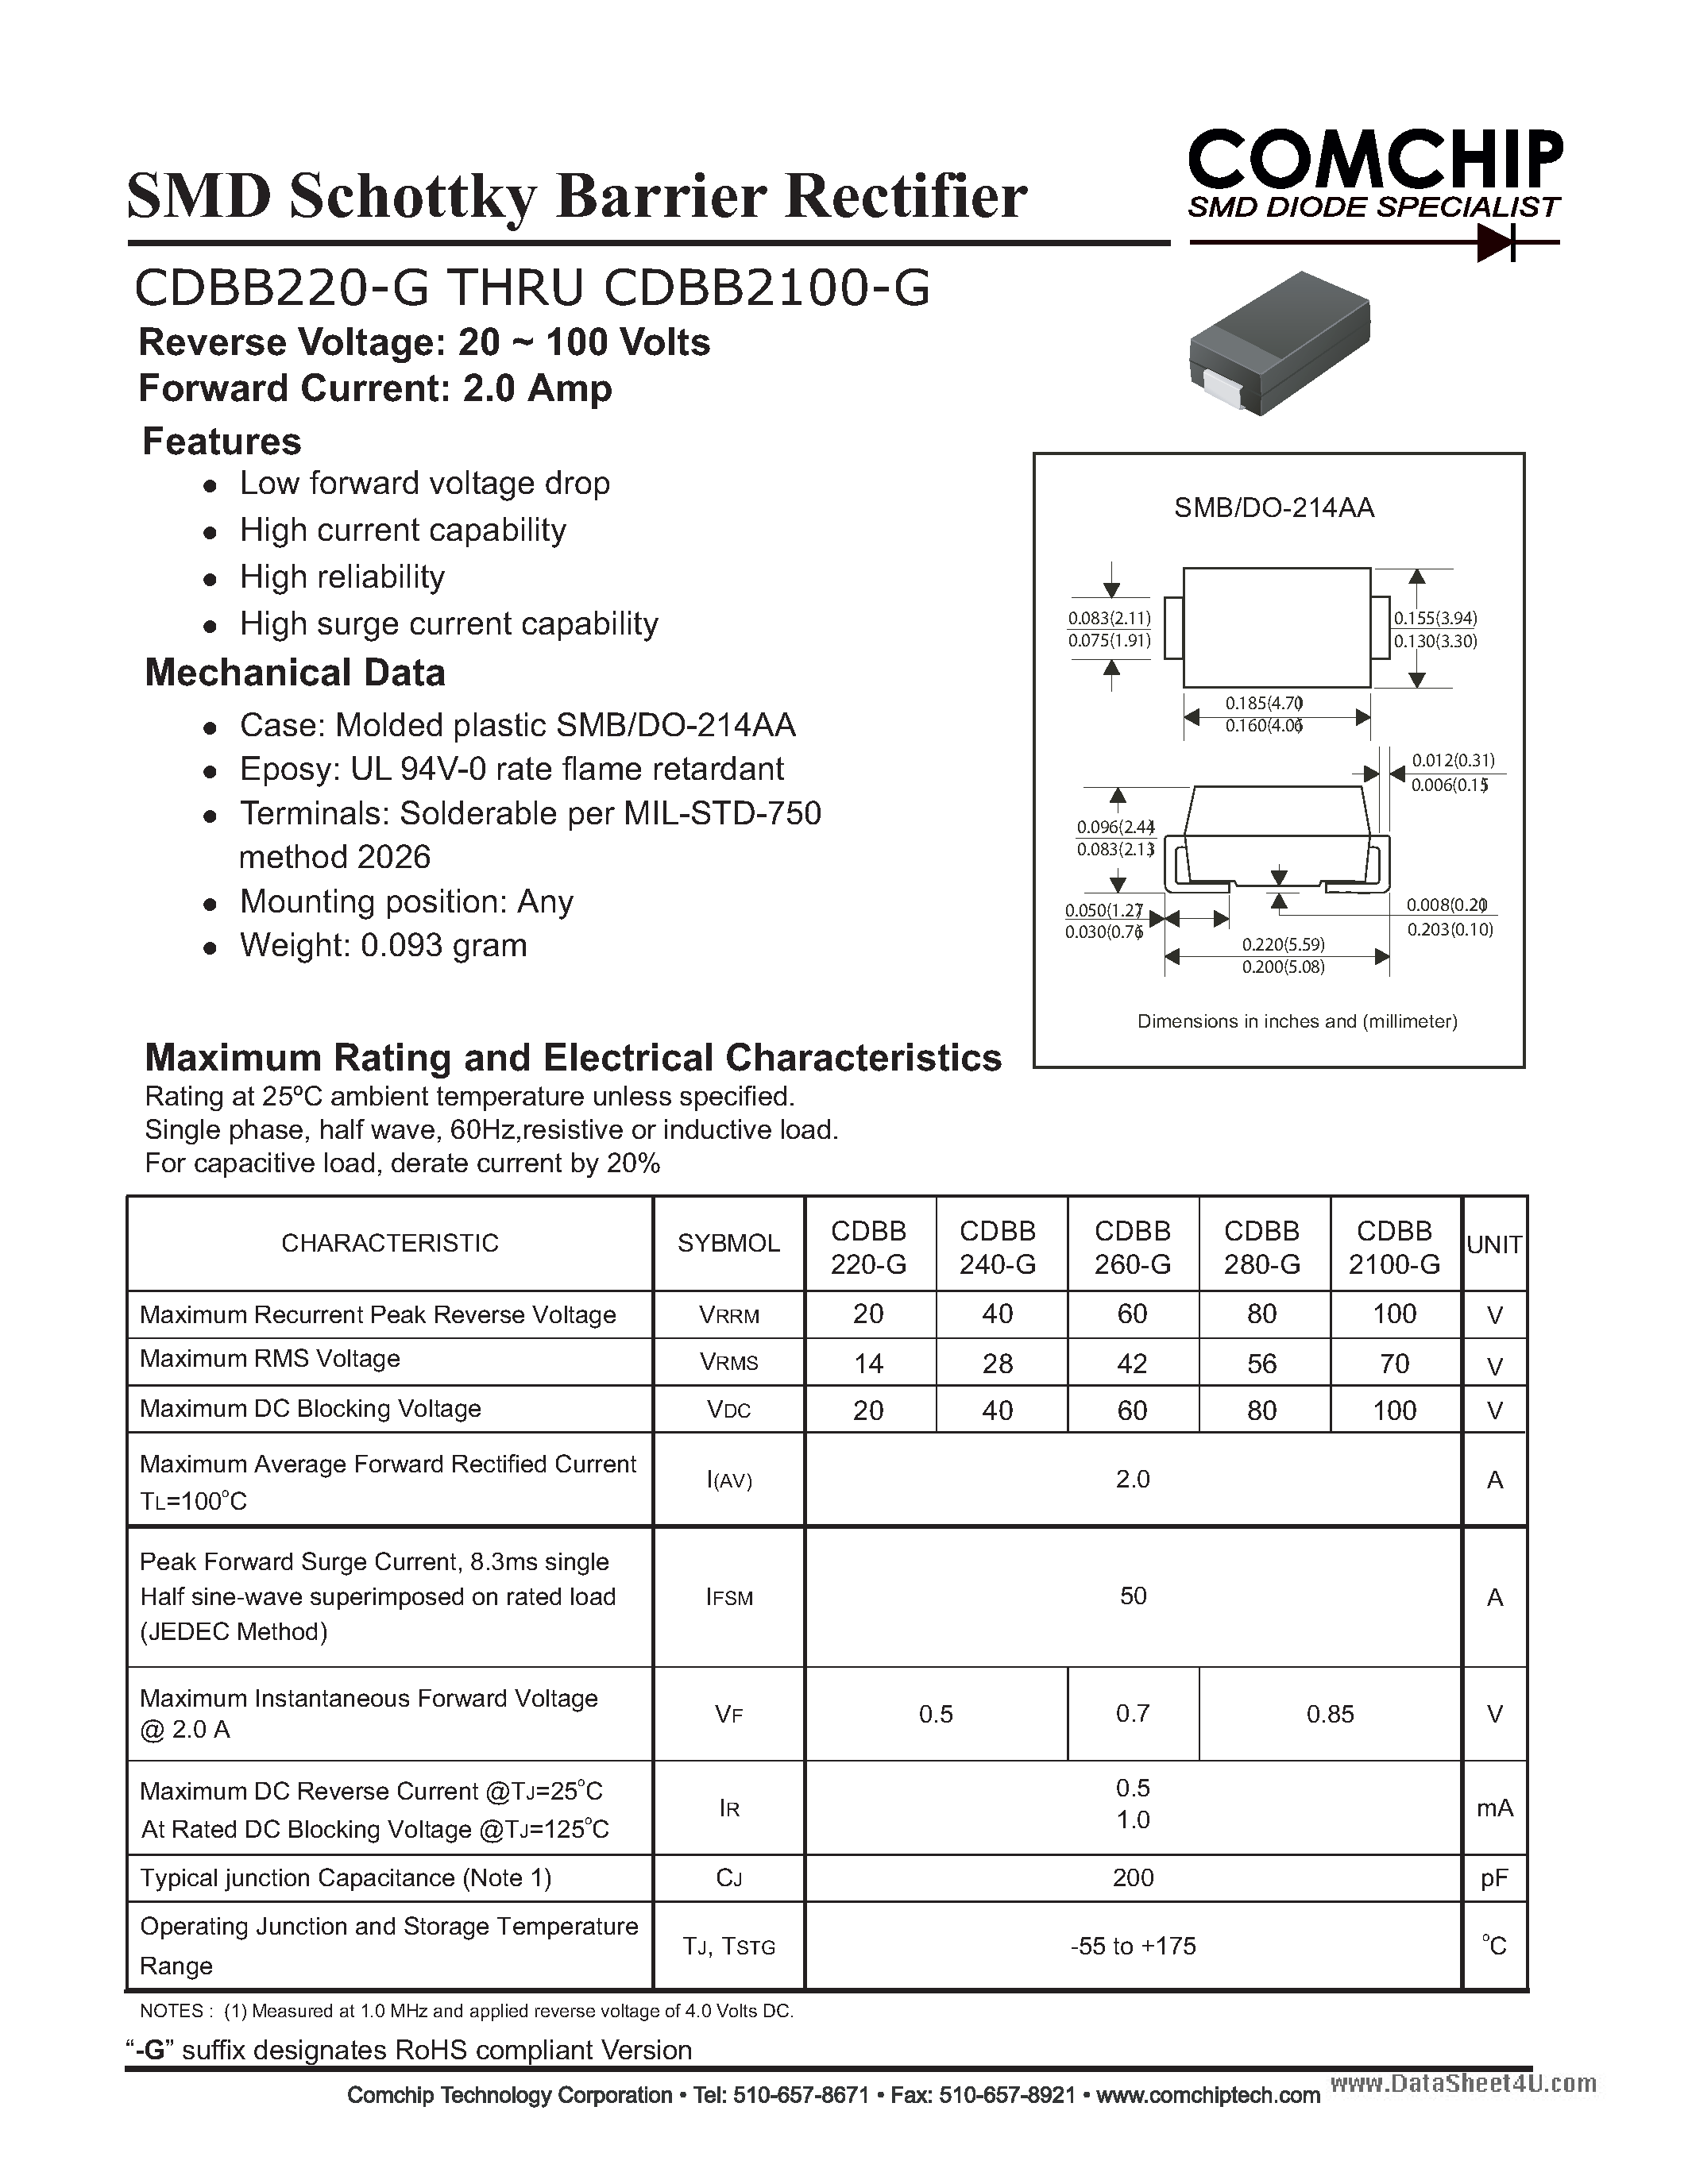 Даташит CDBB2100-G - (CDBB220-G - CDBB2100-G) SMD Schottky Barrier Rectifier страница 1